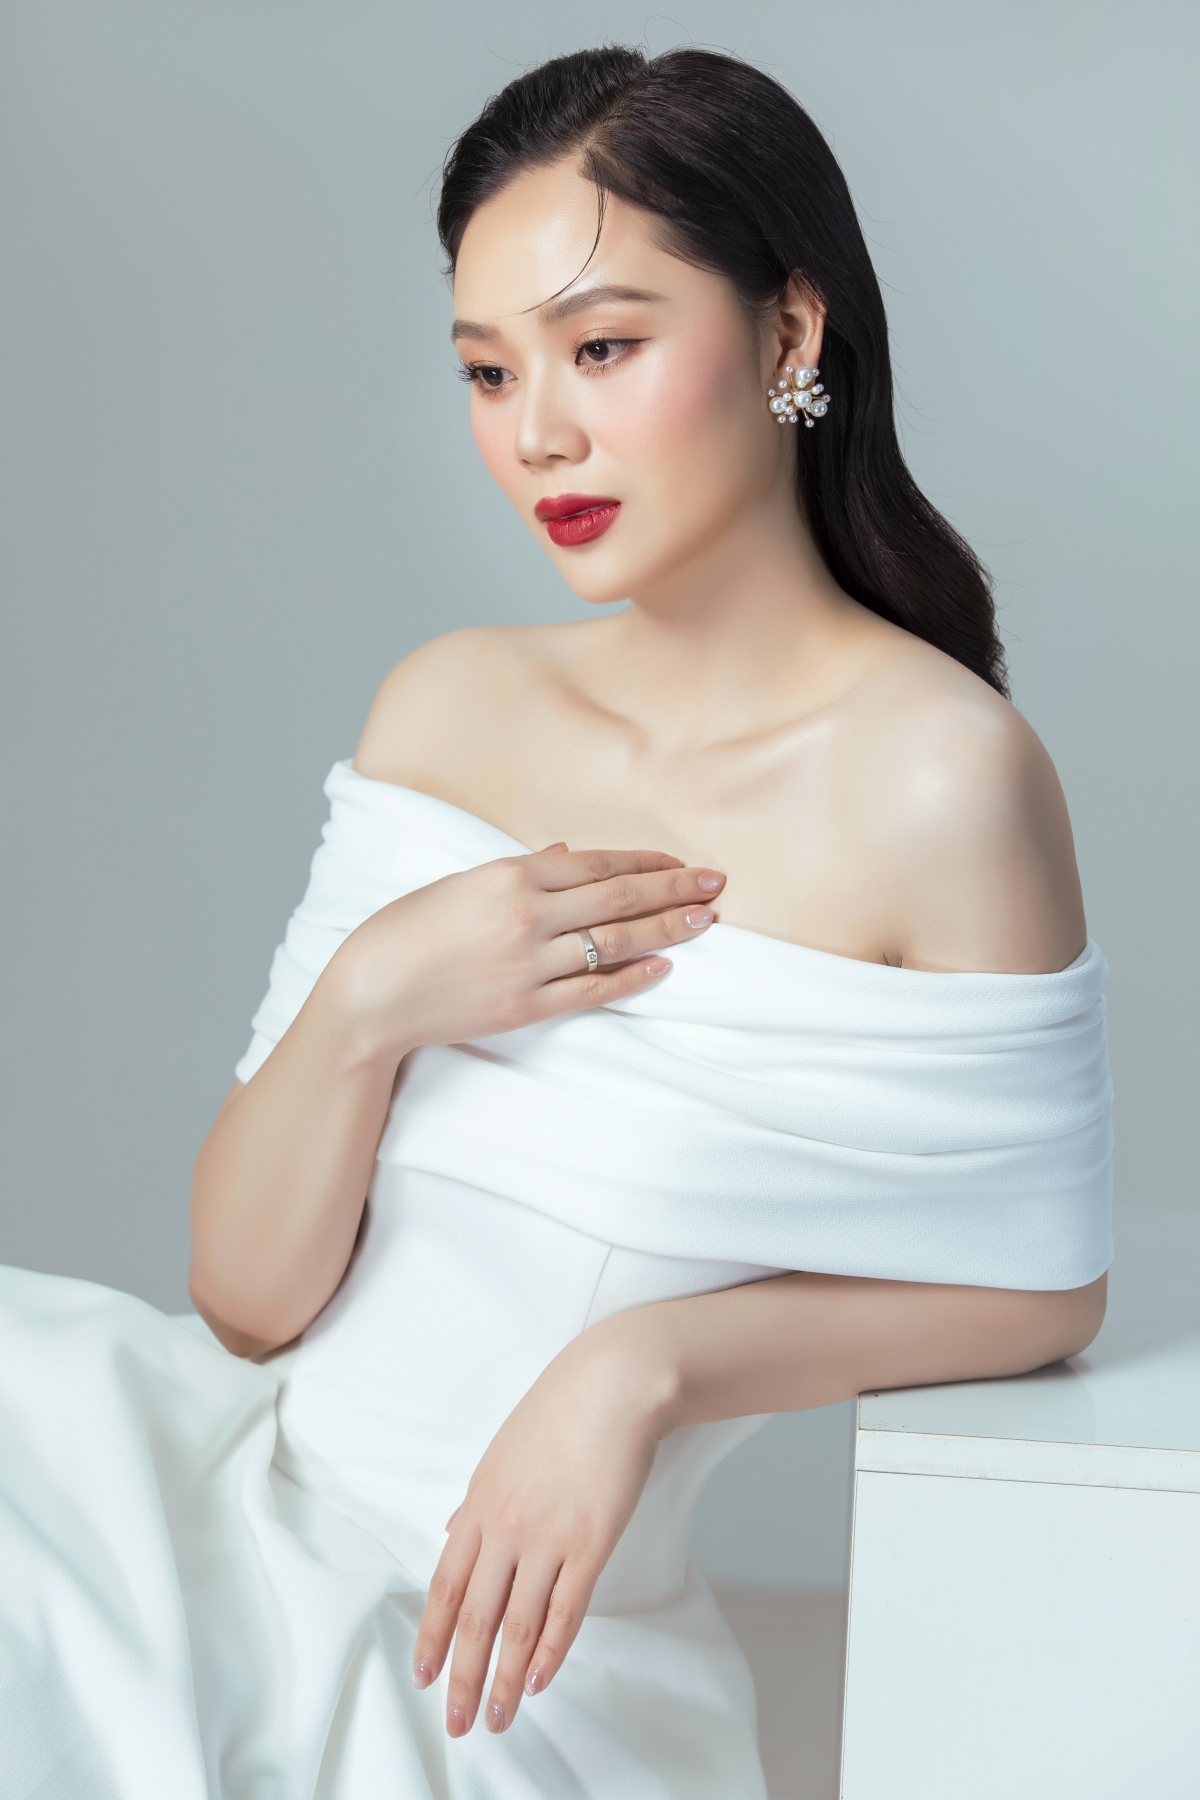 Hoa hậu Mai Phương đẹp kiêu sa trong bộ ảnh kỷ niệm 20 năm đăng quang - Ảnh 4.